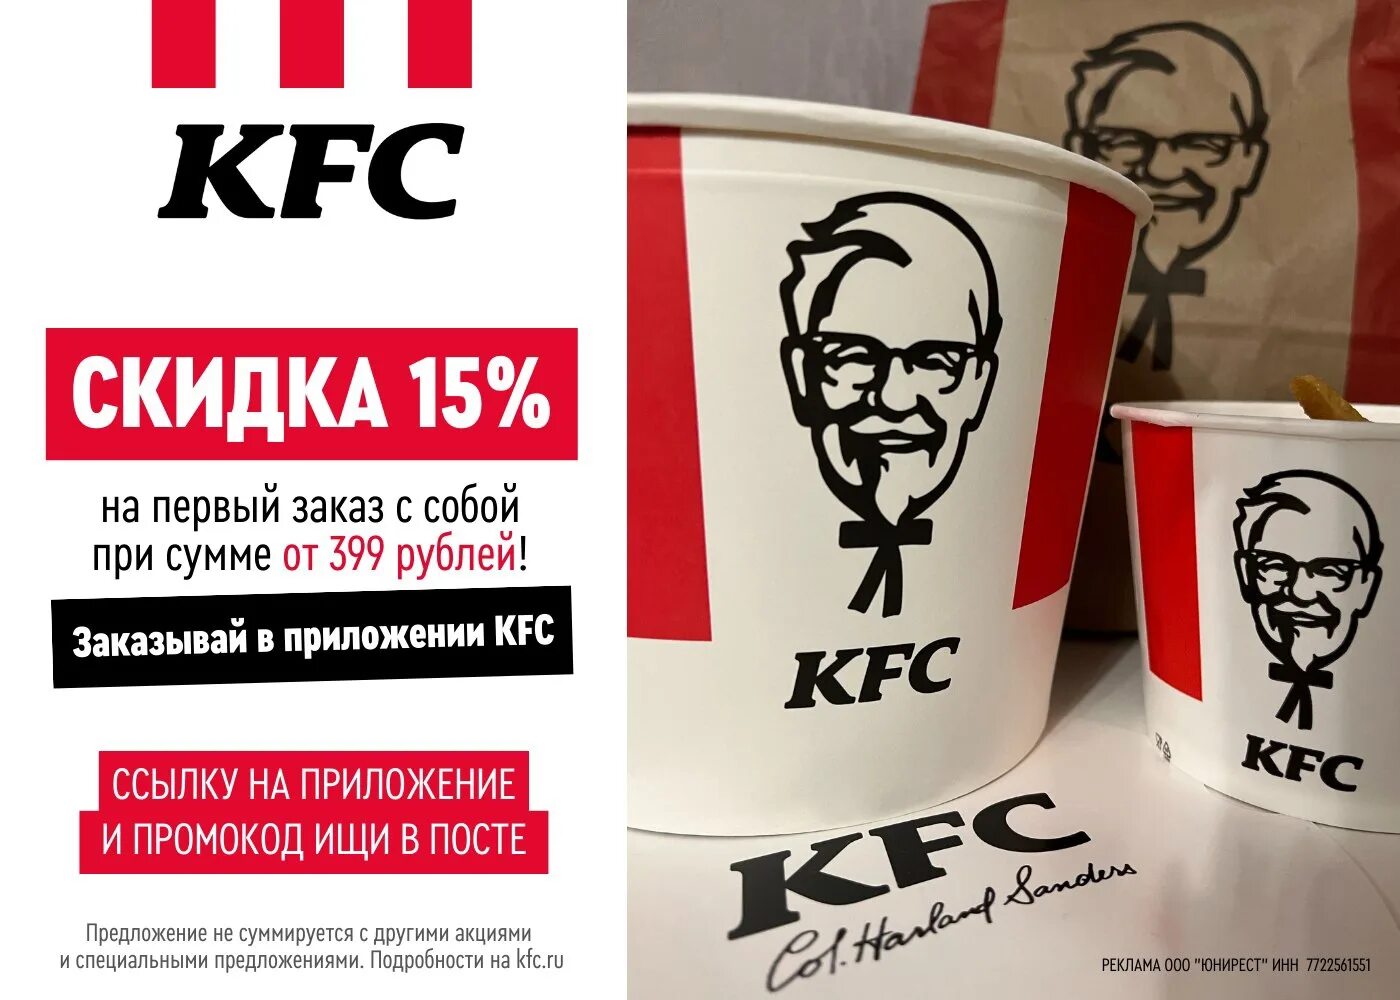 Промокод kfc на первый заказ в приложении. KFC промокод. KFC акции.